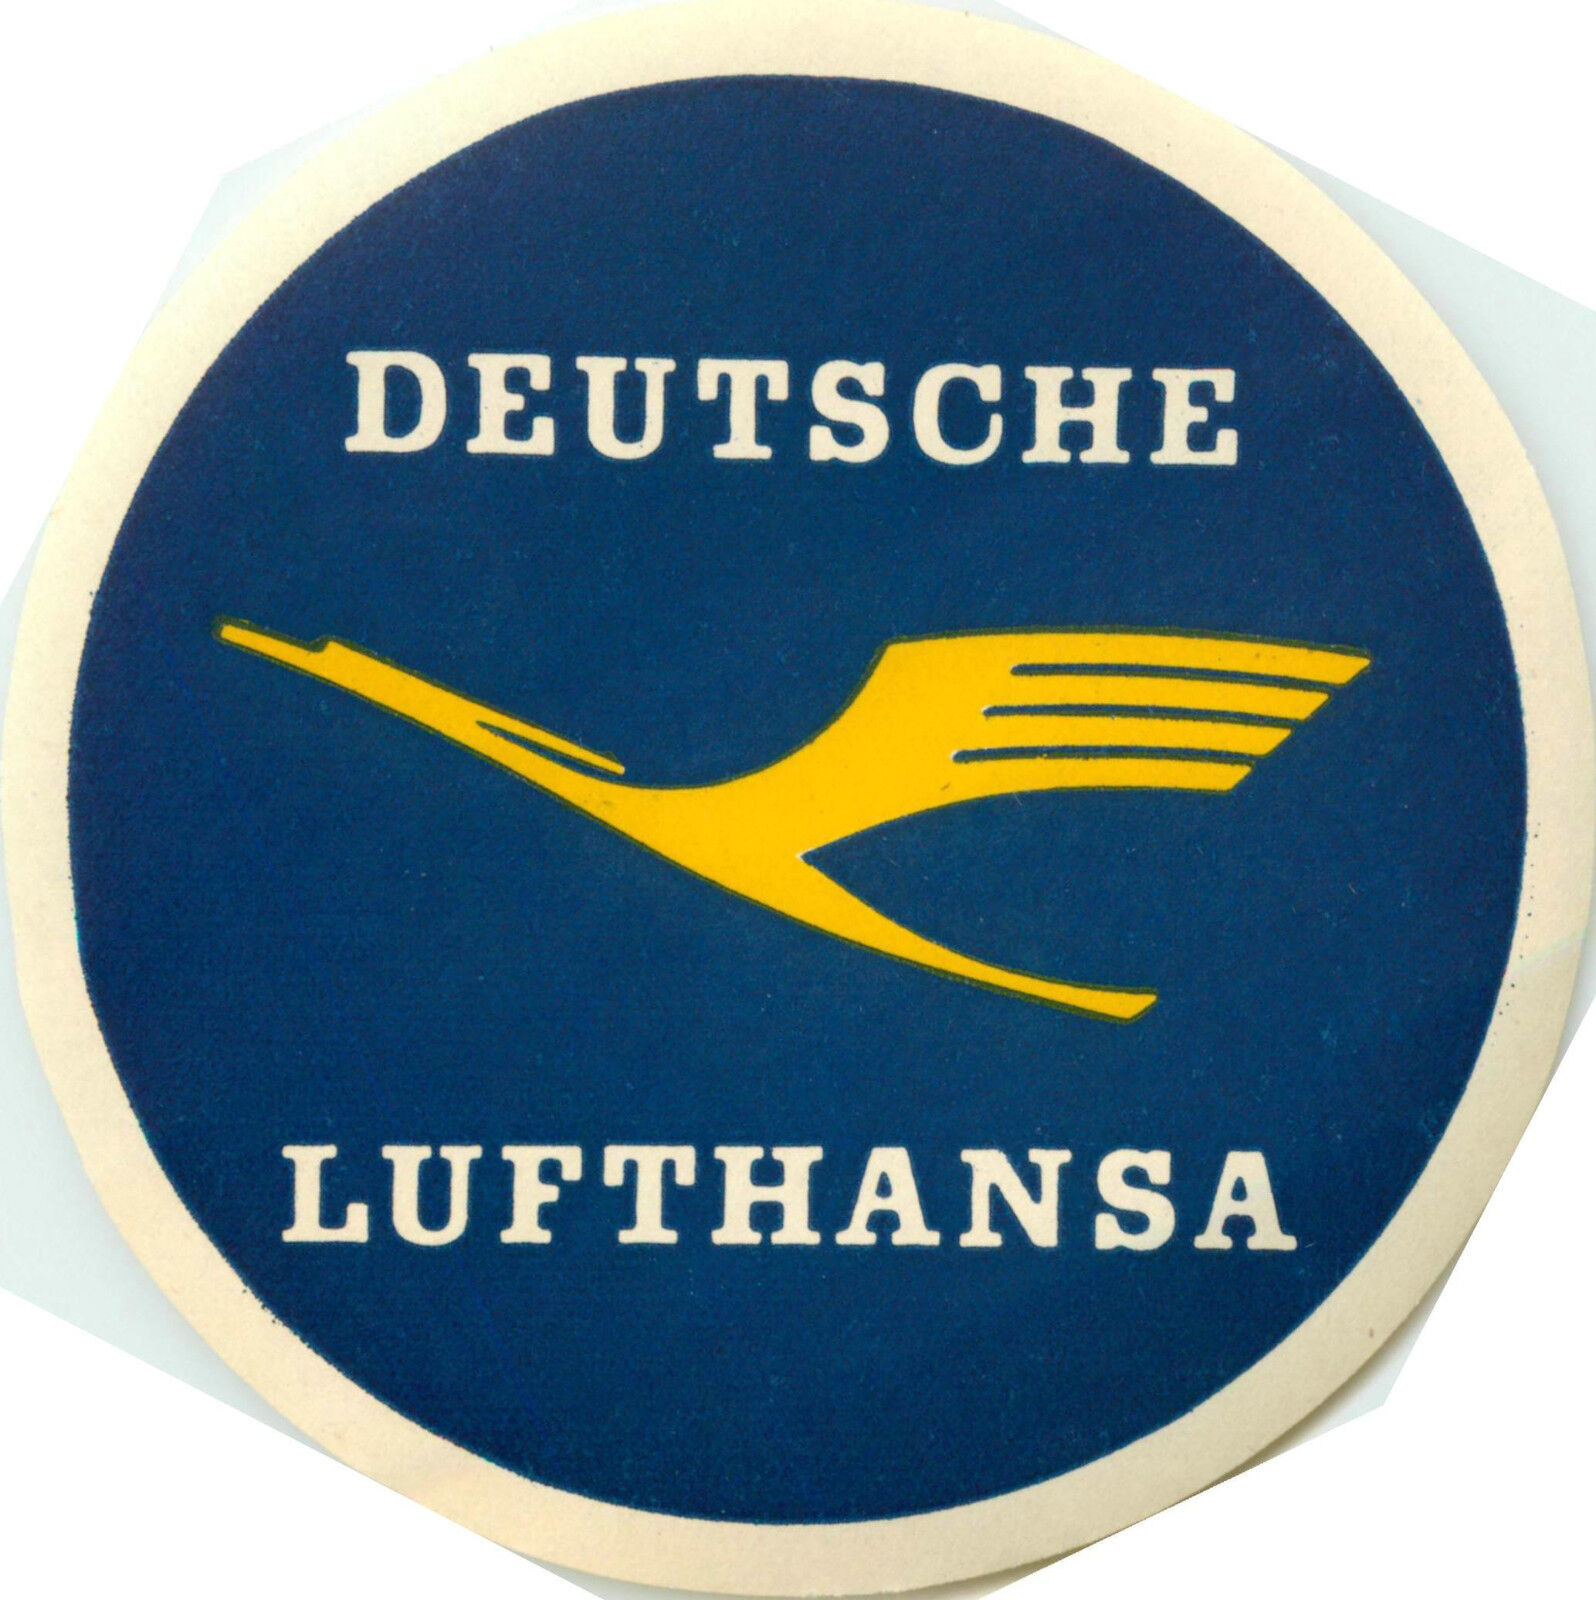 Deutsche LUFTHANSA / LUFT HANSA - Great Old Airline Luggage Label, circa 1955